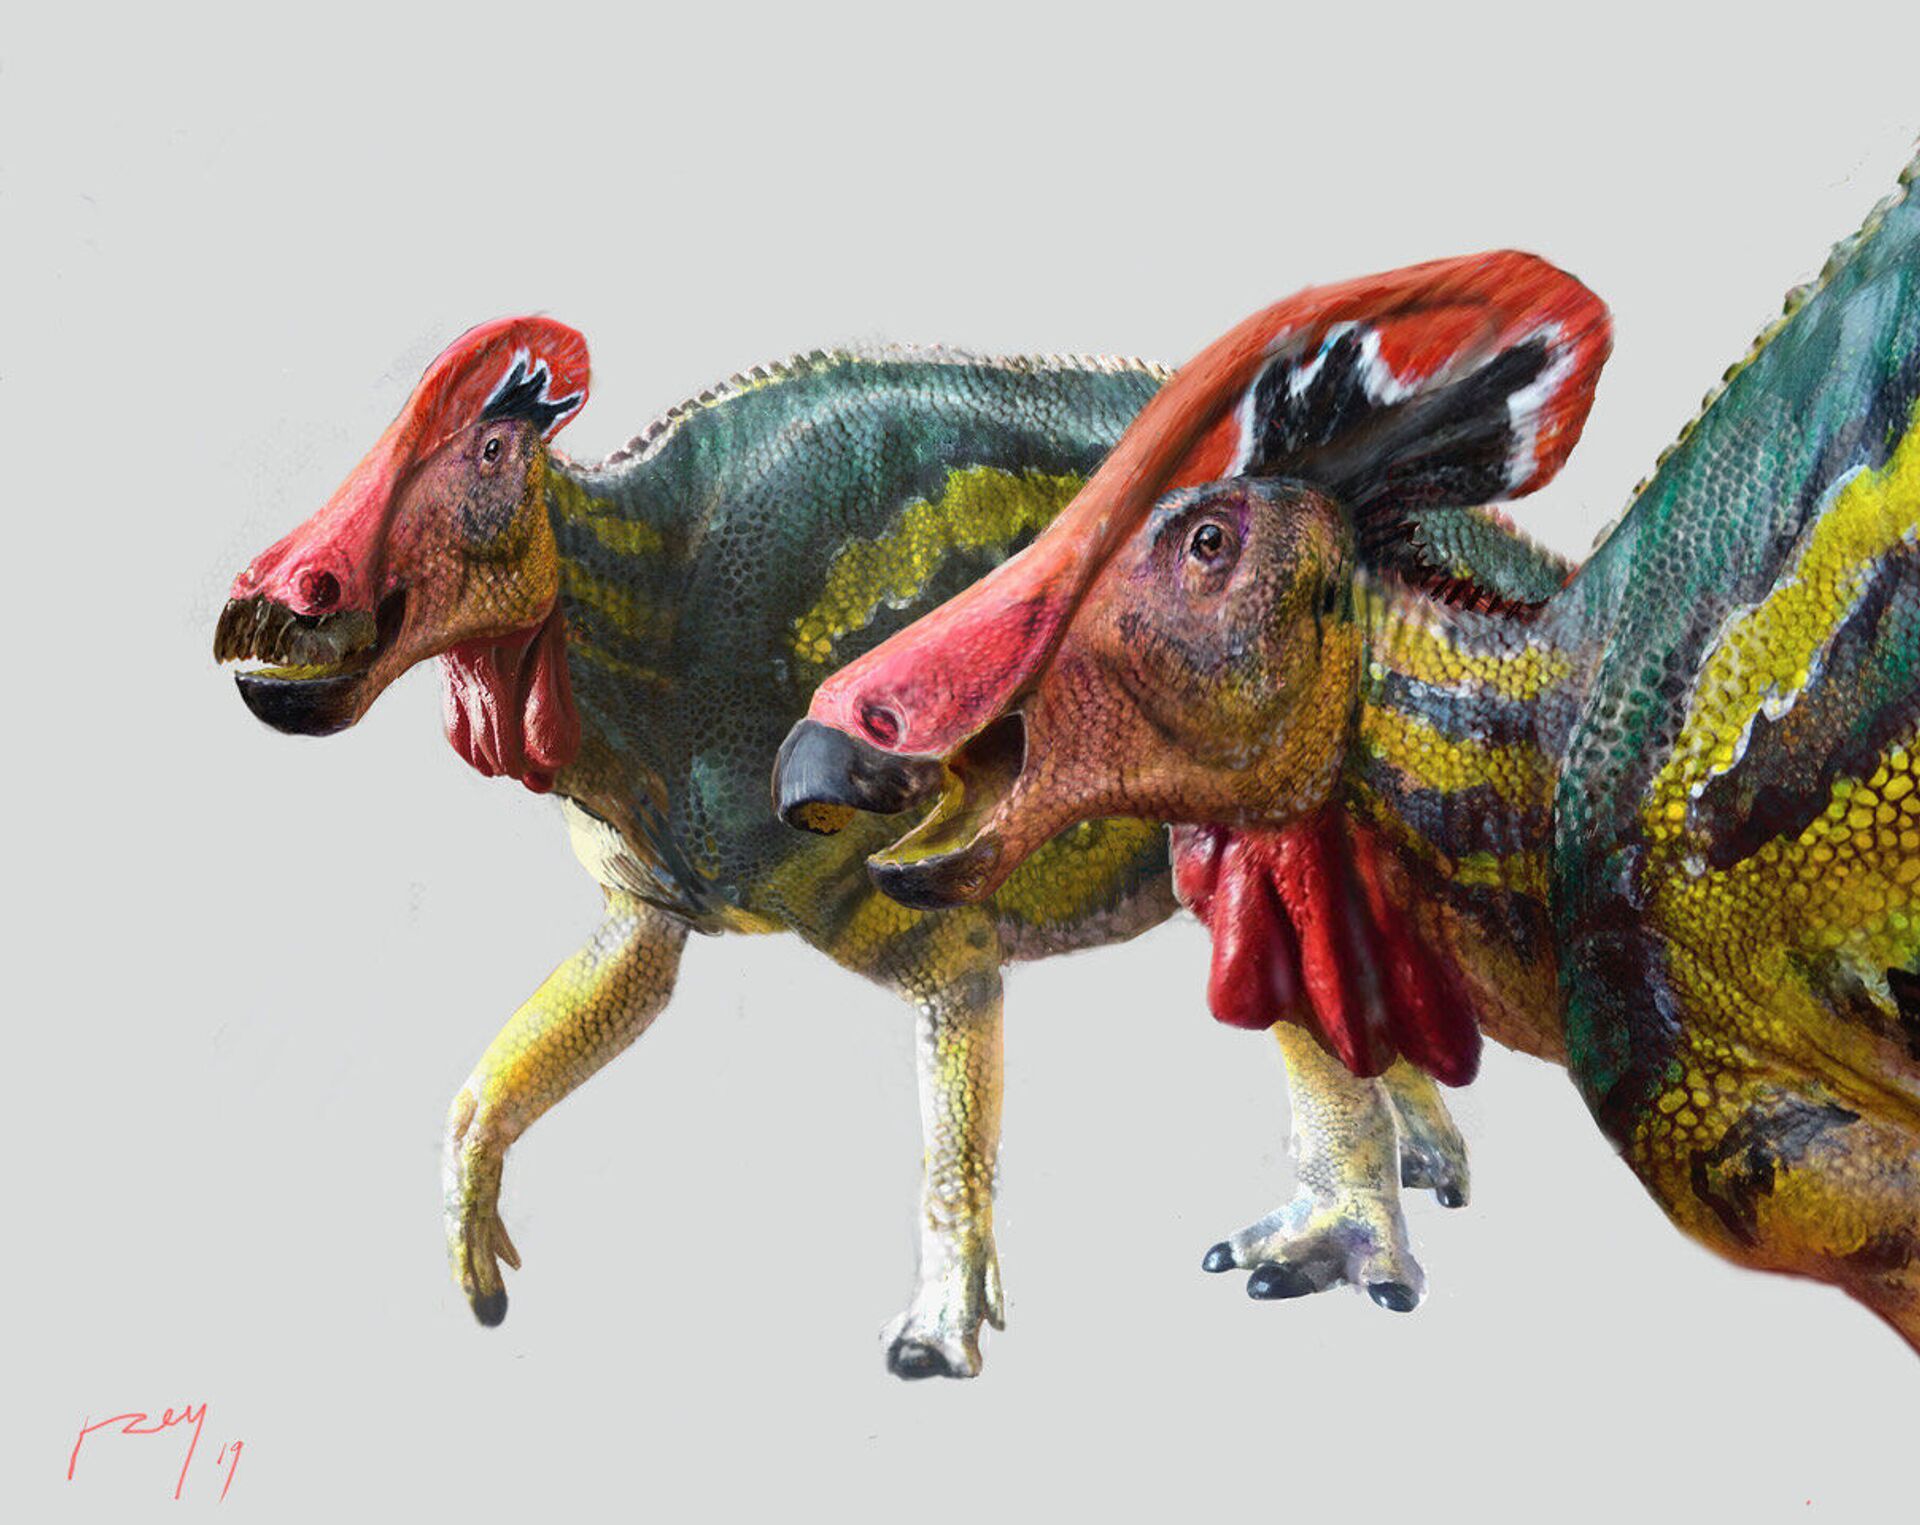 'Papagaiossauro'? Identificada no México nova espécie de dinossauro que emitia sons (FOTO) - Sputnik Brasil, 1920, 14.05.2021